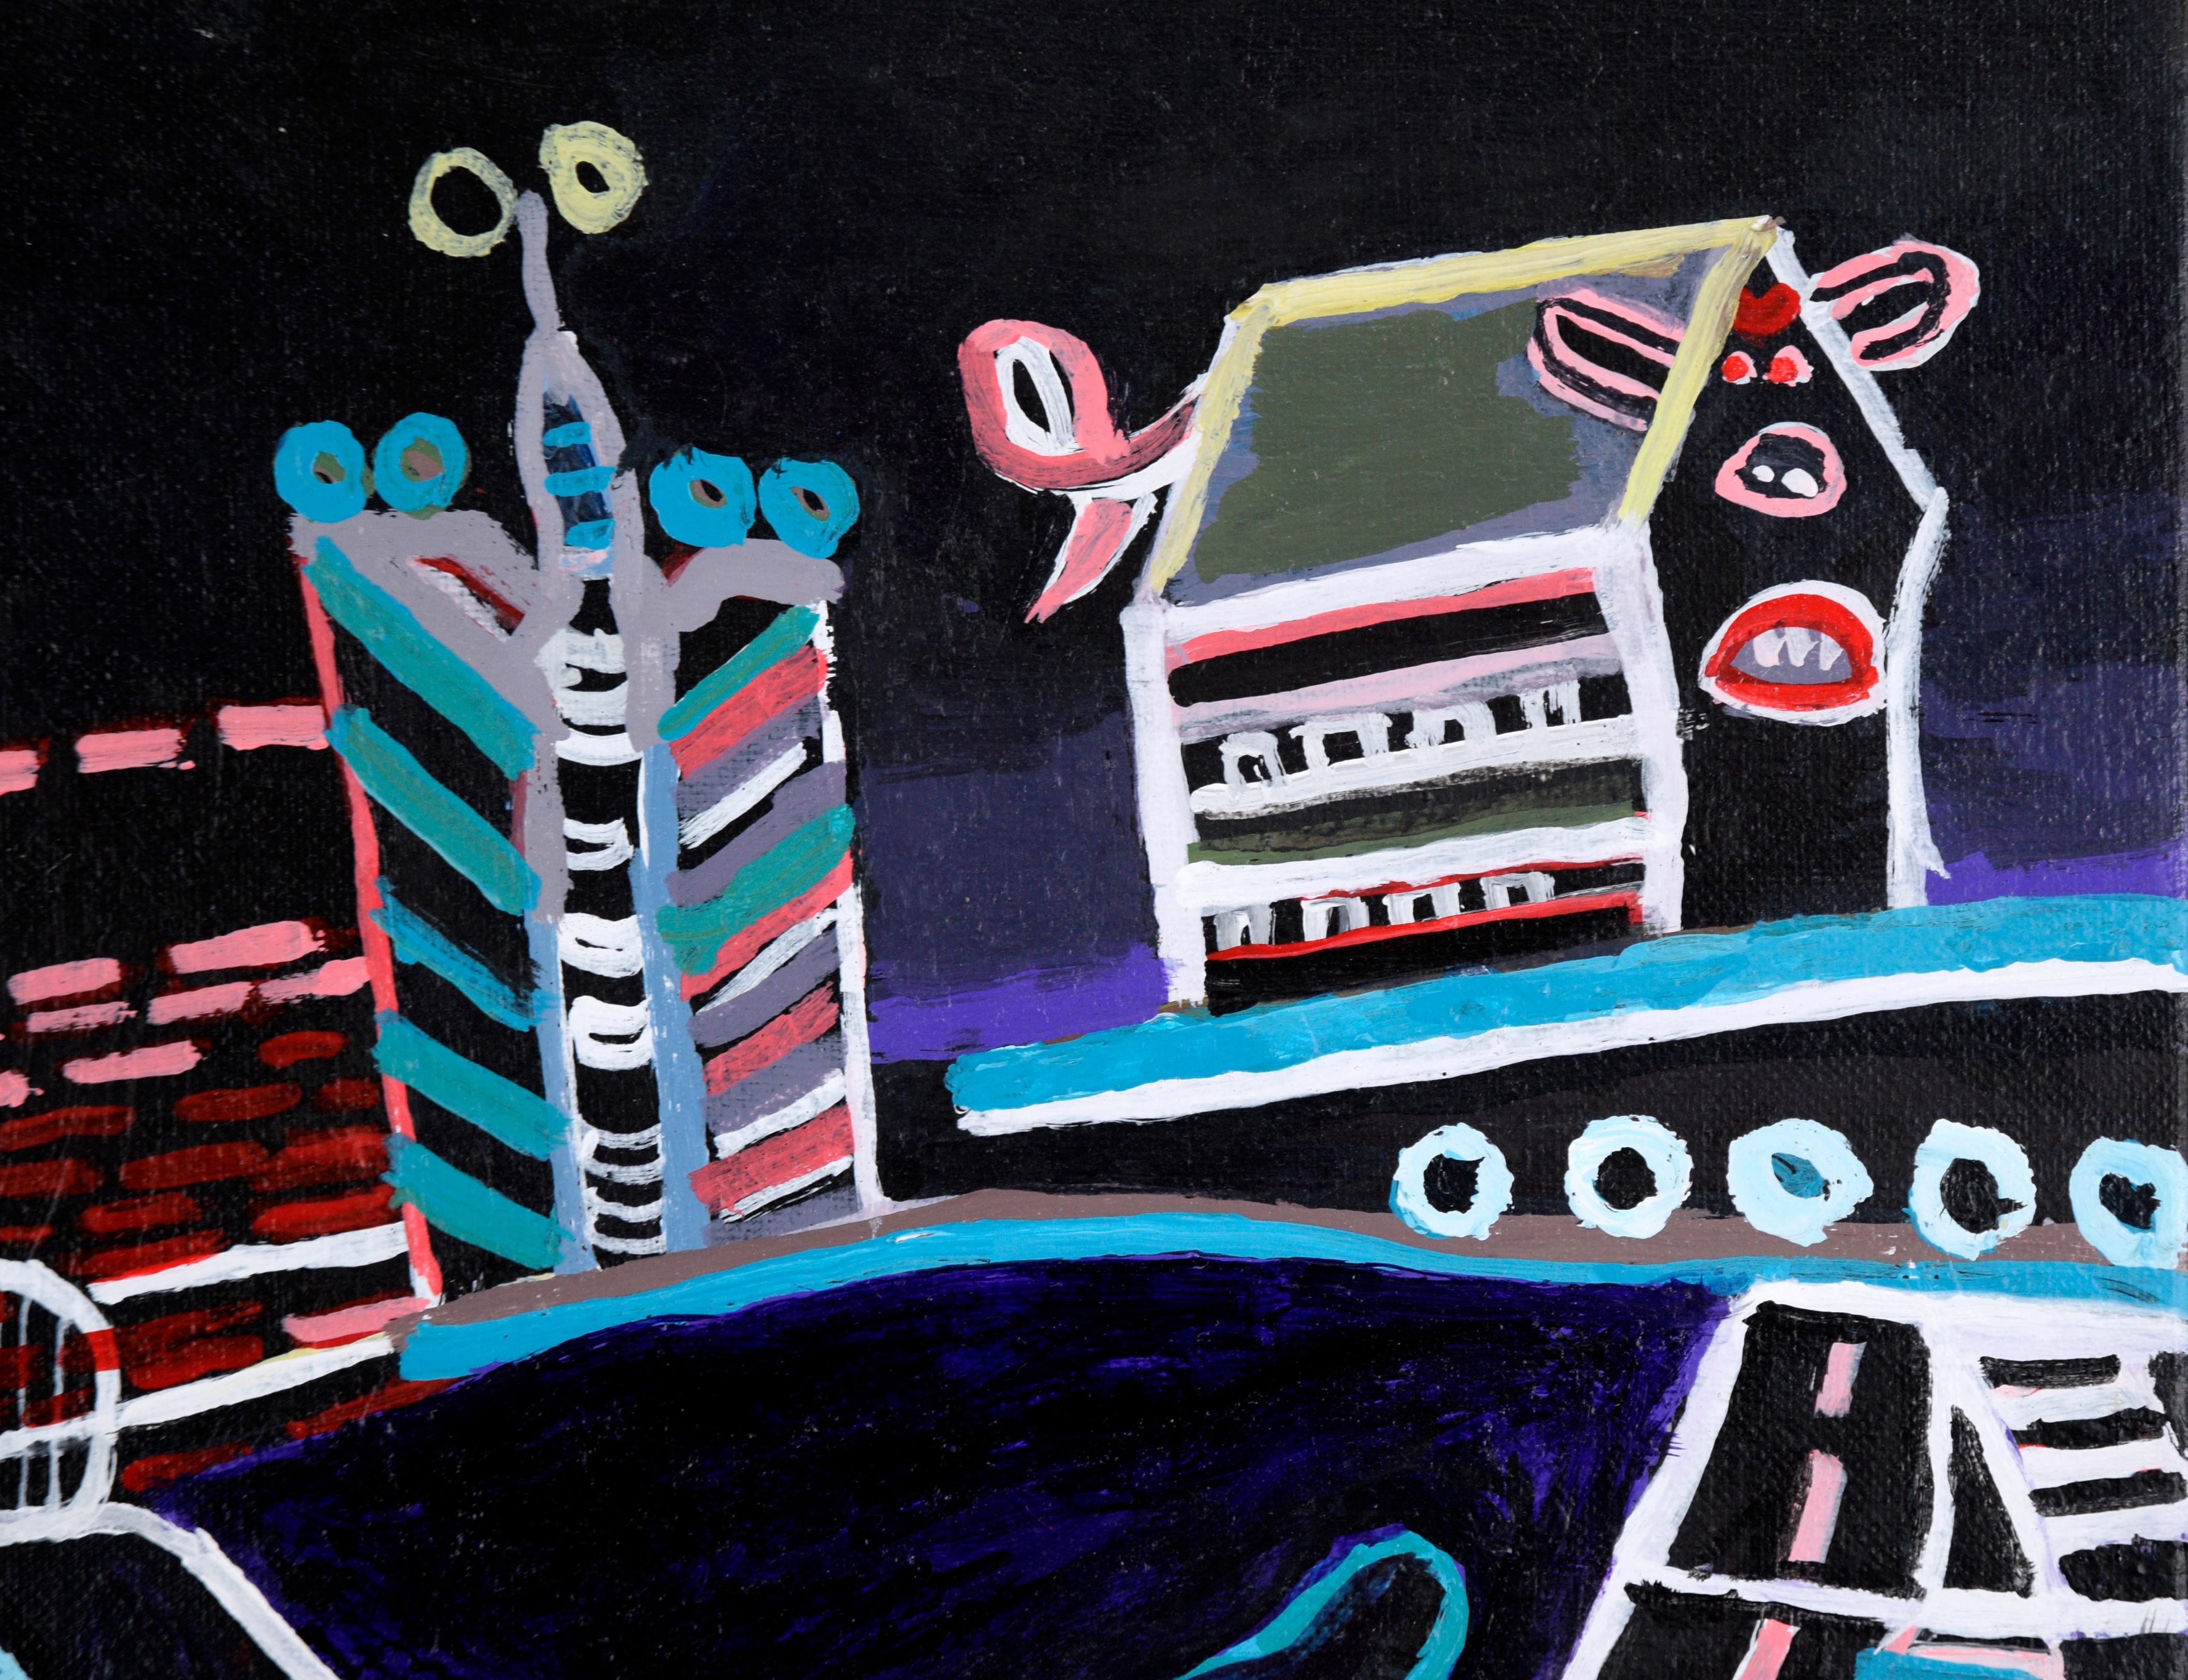 Représentation surréaliste d'un personnage marchant dans une ville par Marshall Woodall (américain, né en 1958). Le paysage urbain n'est représenté que par des contours, donnant l'impression d'être éclairé par des néons la nuit. La figure qui